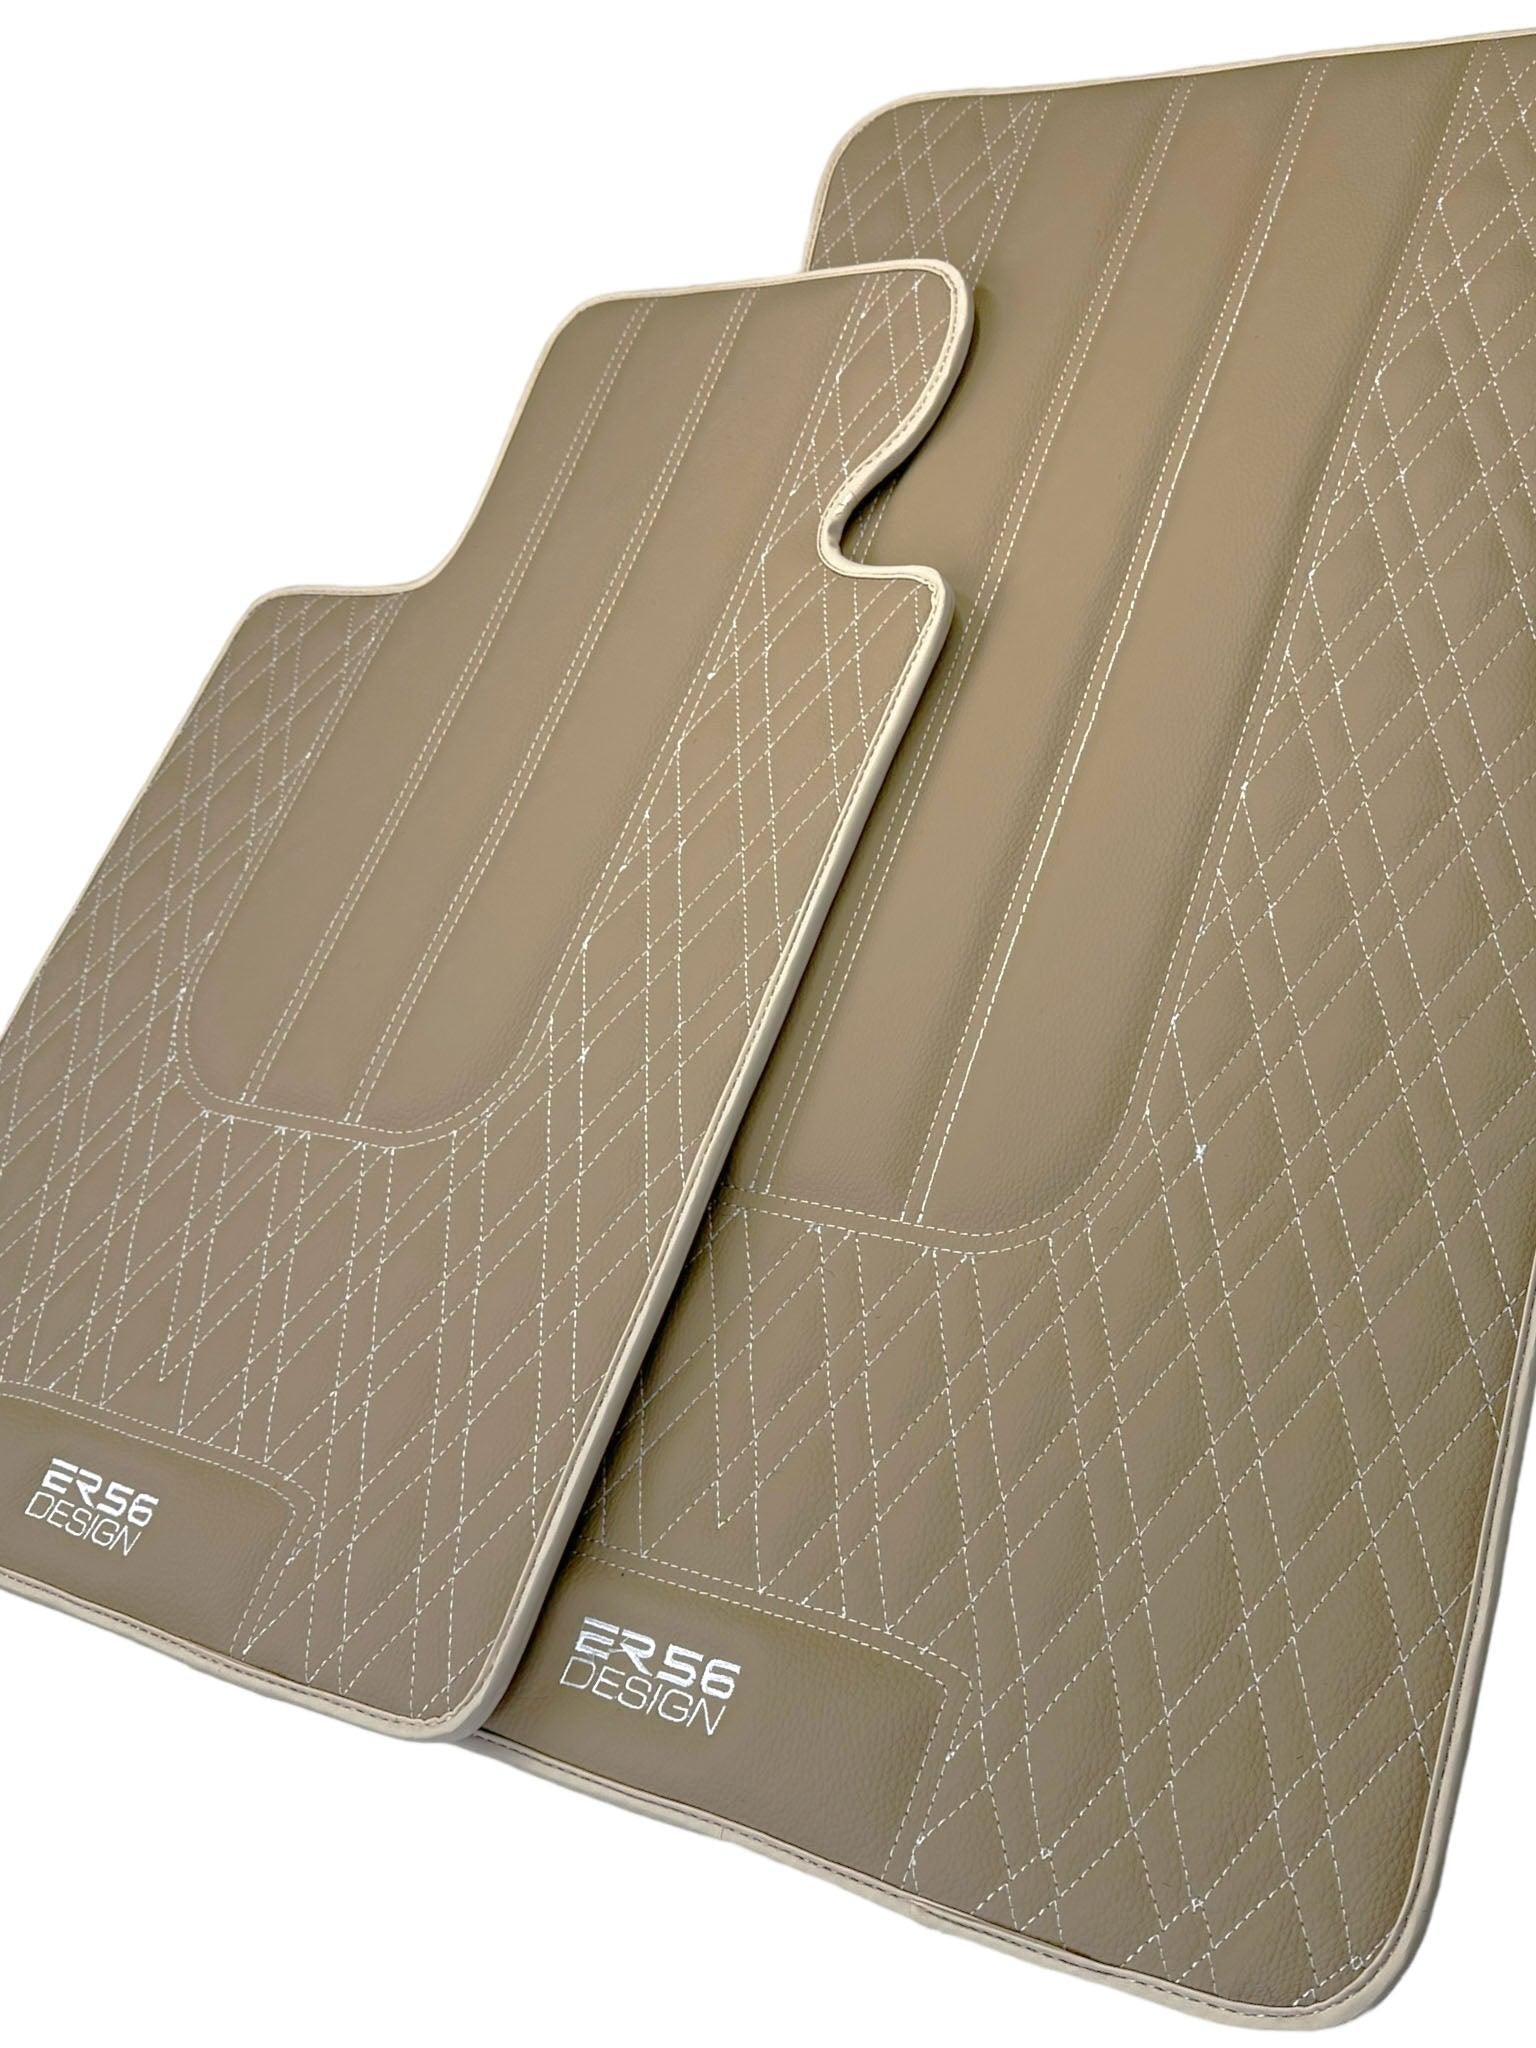 Beige Leather Floor Floor Mats For BMW 5 Series E60